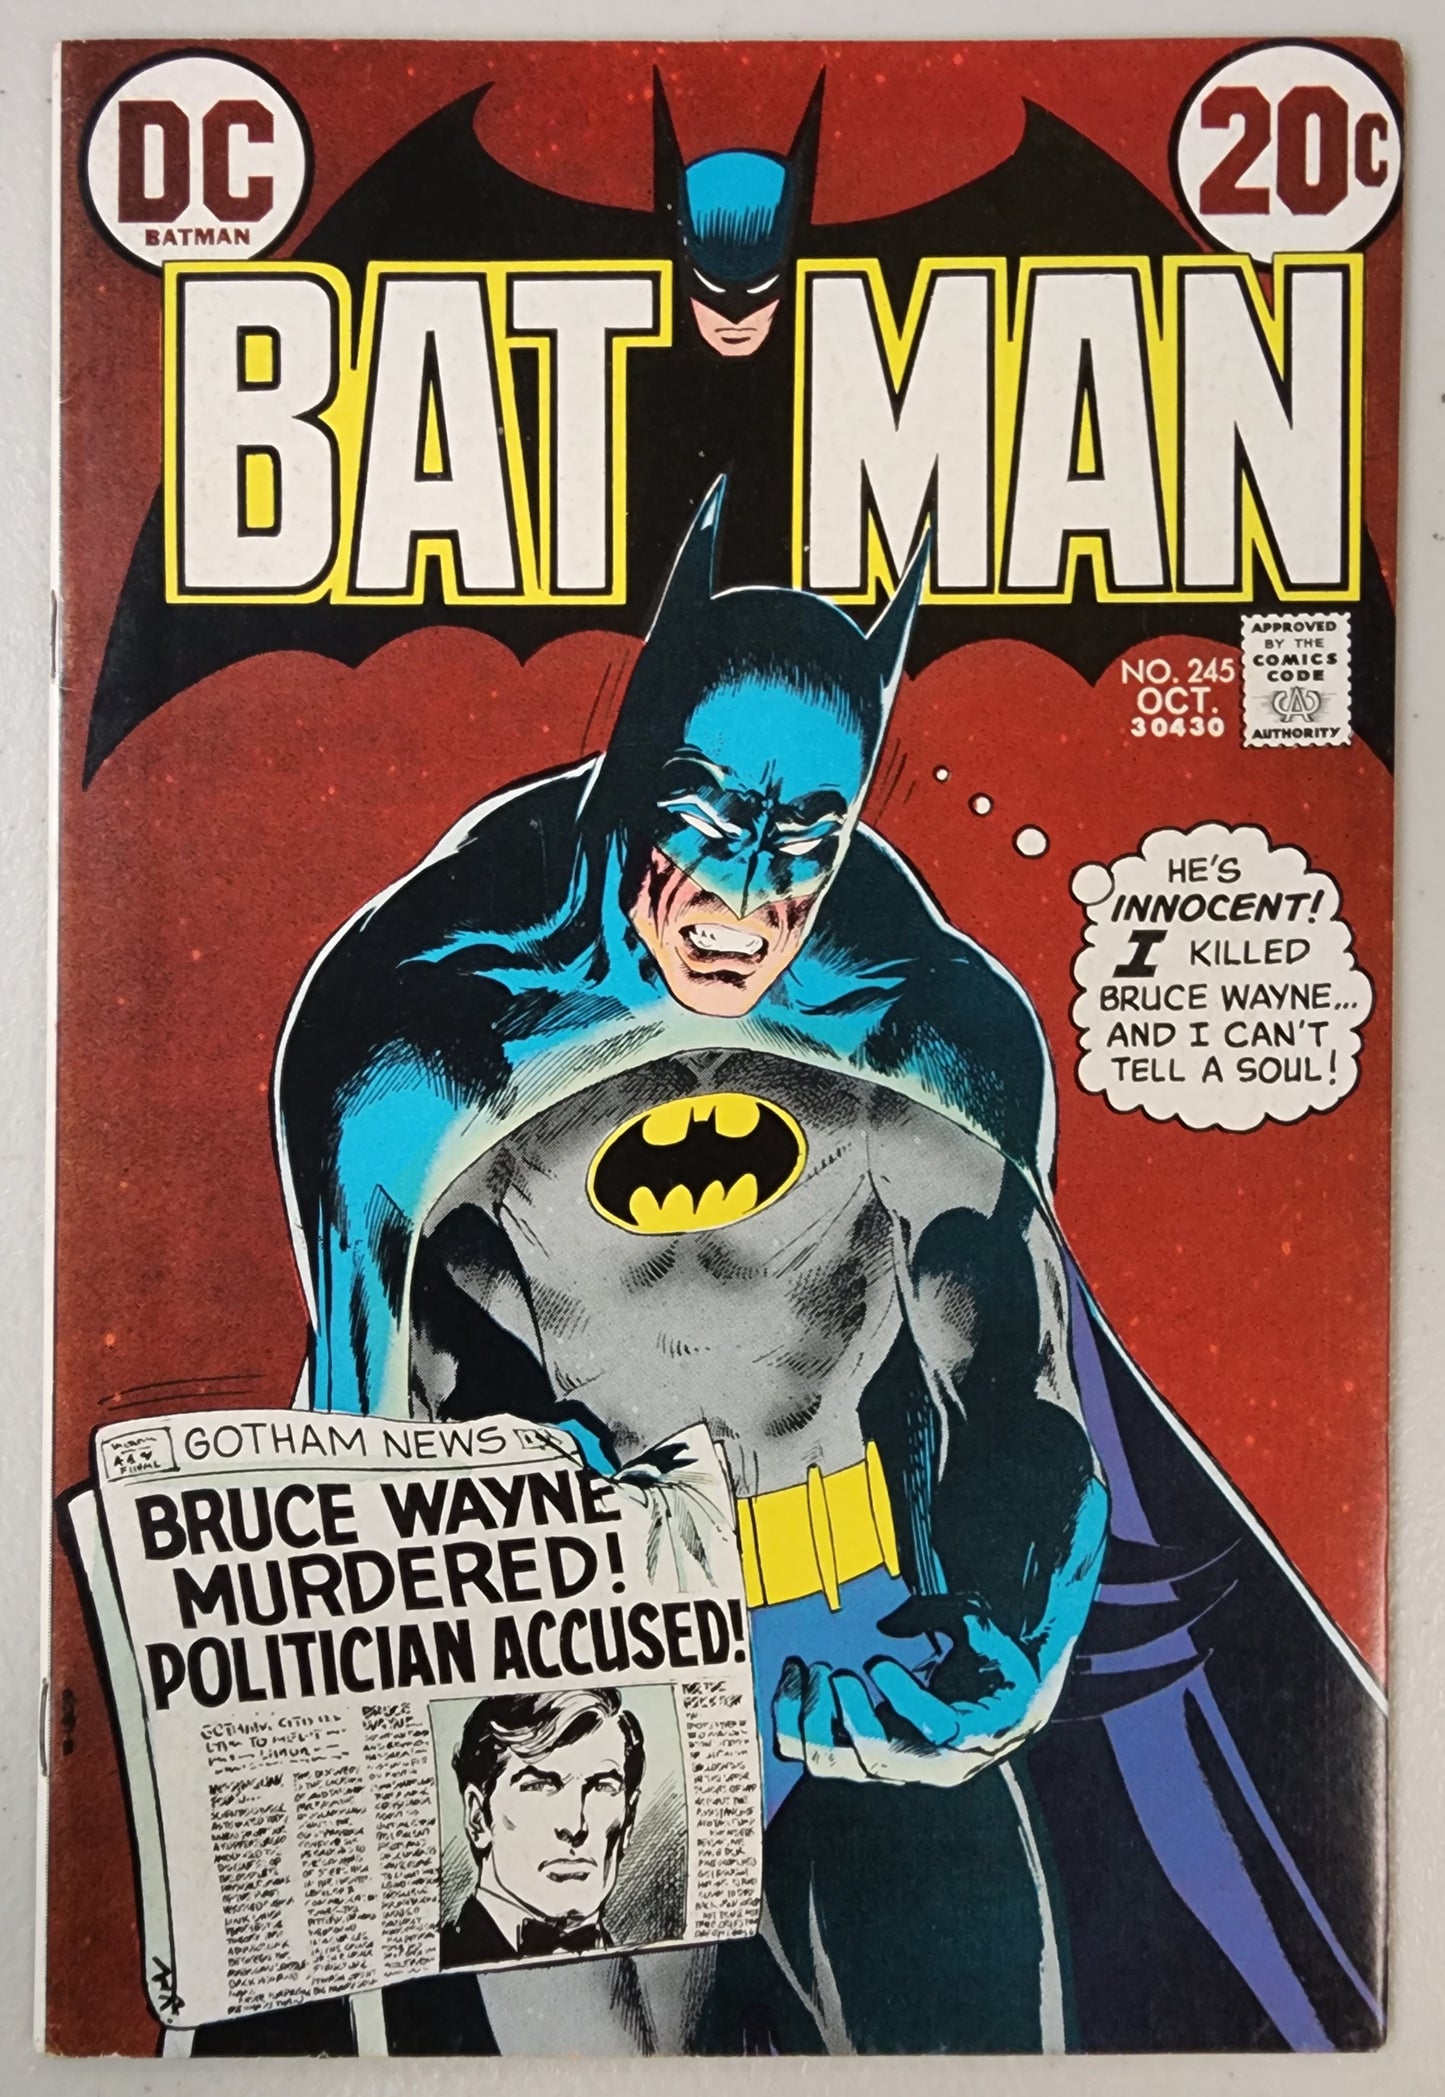 BATMAN #245 NEAL ADAMS COVER 1972